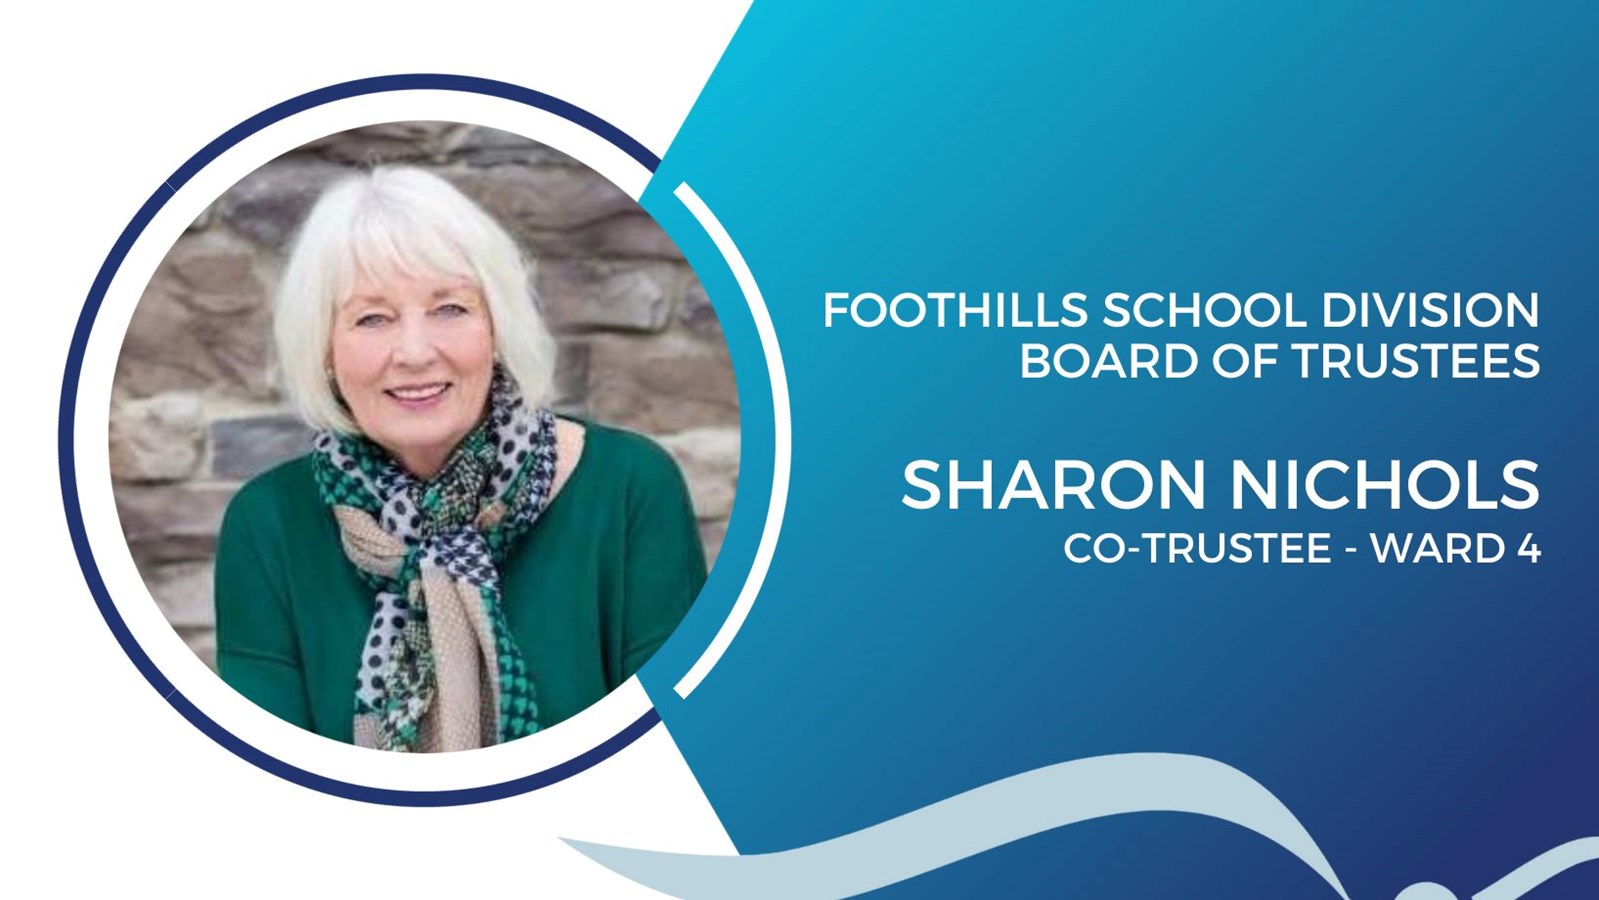 Ward 4 - Sharon Nichols